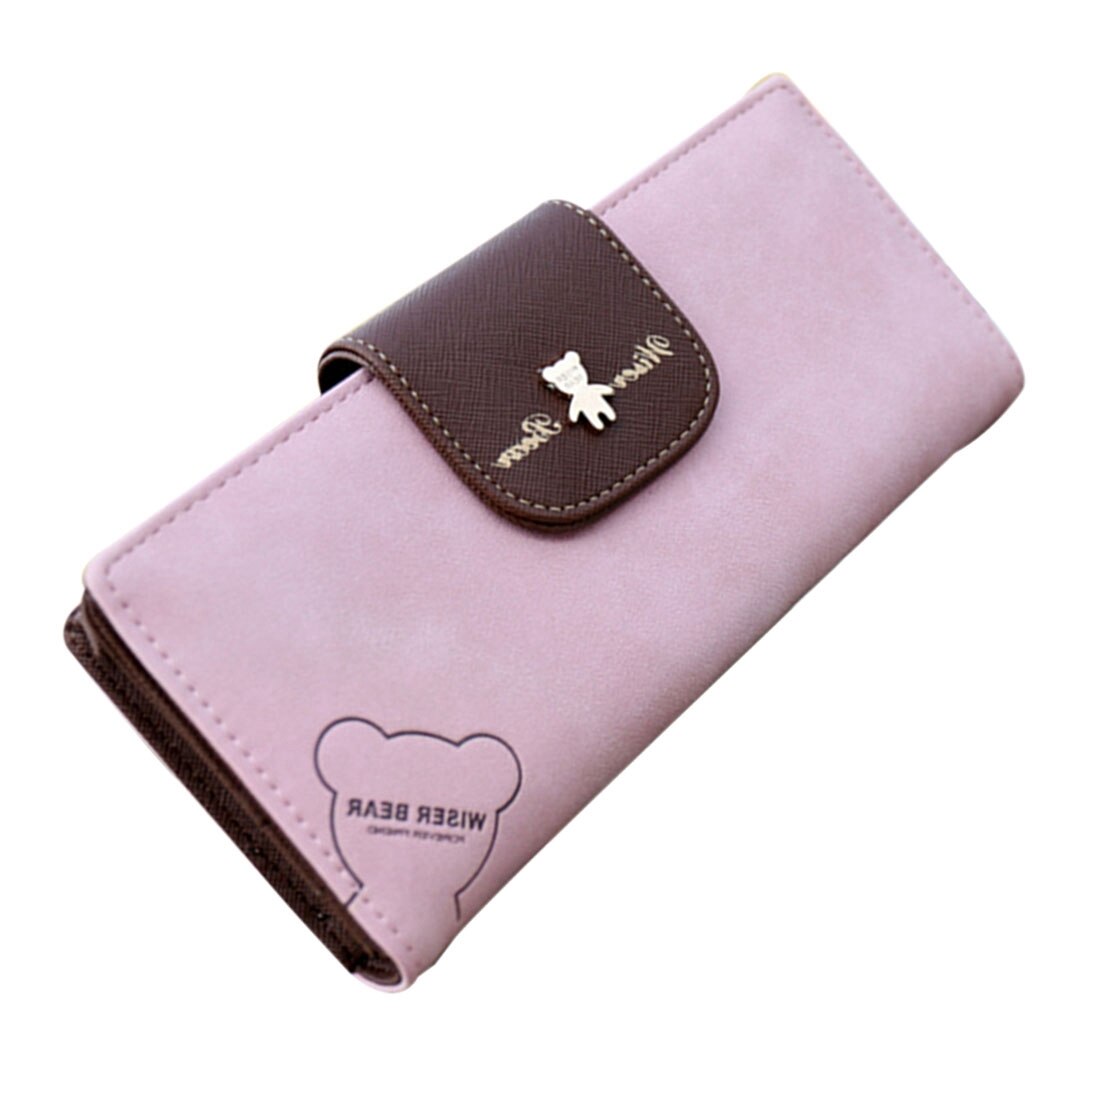 Hot NEW Cute Fashion Women Leather Wallet Button Clutch Purse Lady Long Handbag Bag Grey - ebowsos